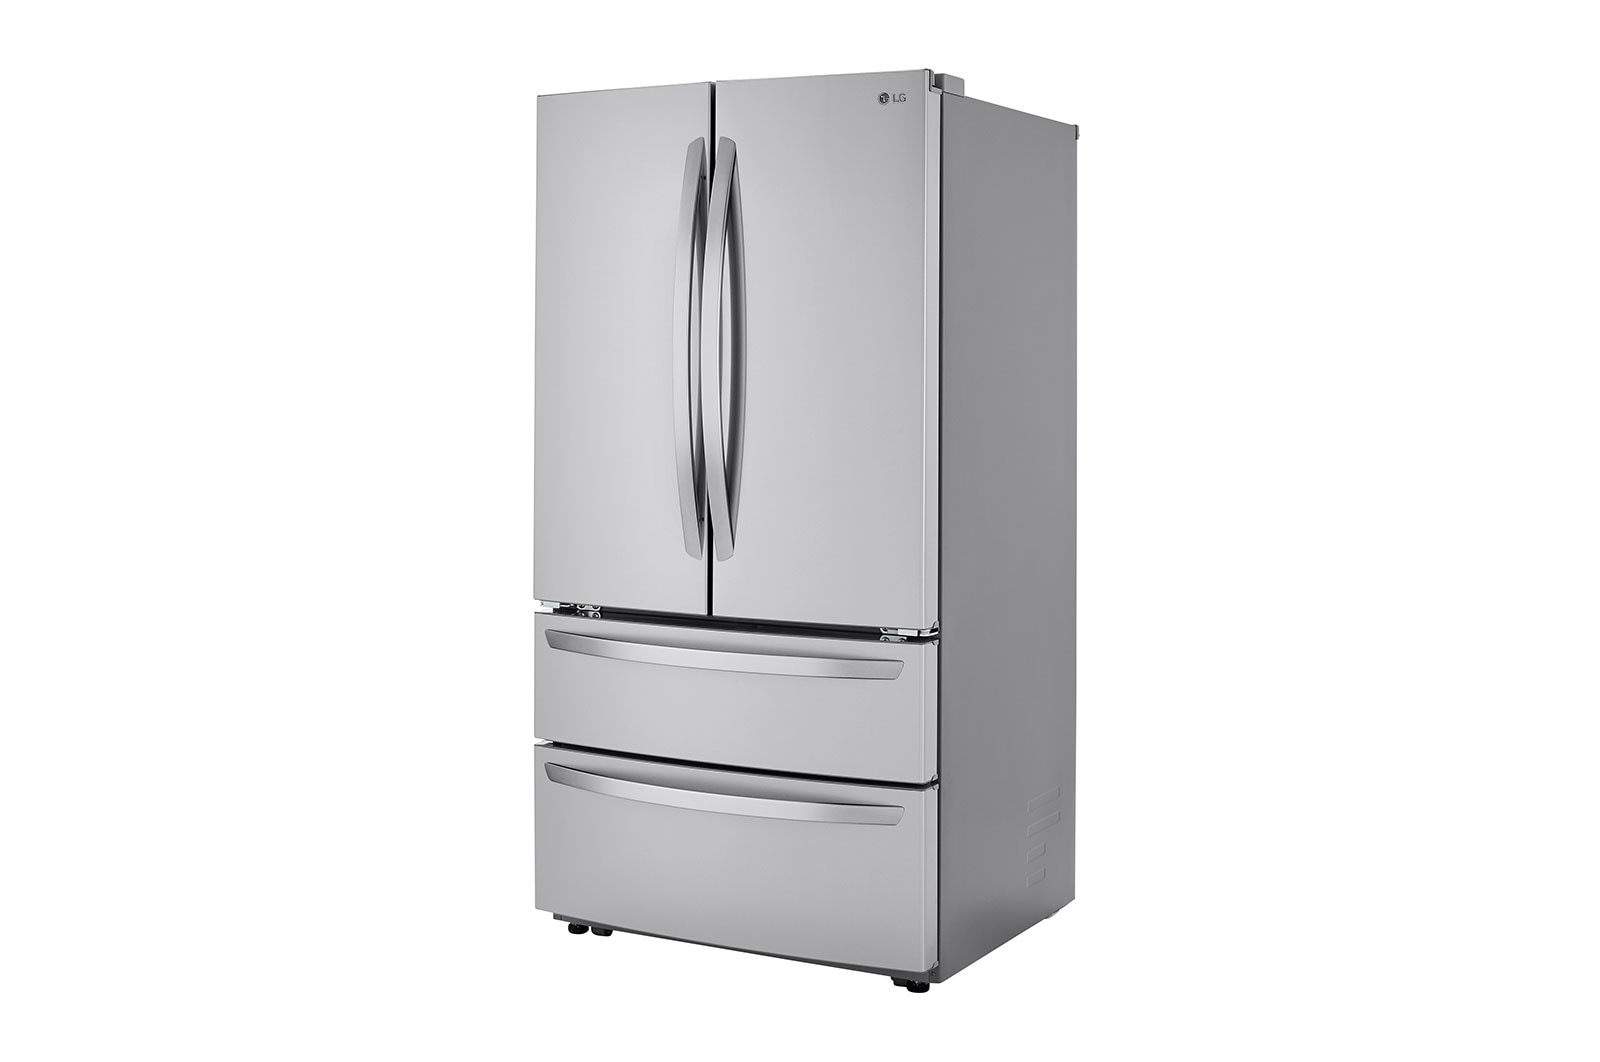 LG - 23 cu. ft. 4-Door French Door Refrigerator with Internal Water Dispenser in PrintProof Stainless Steel, Counter Depth - LMWC23626S